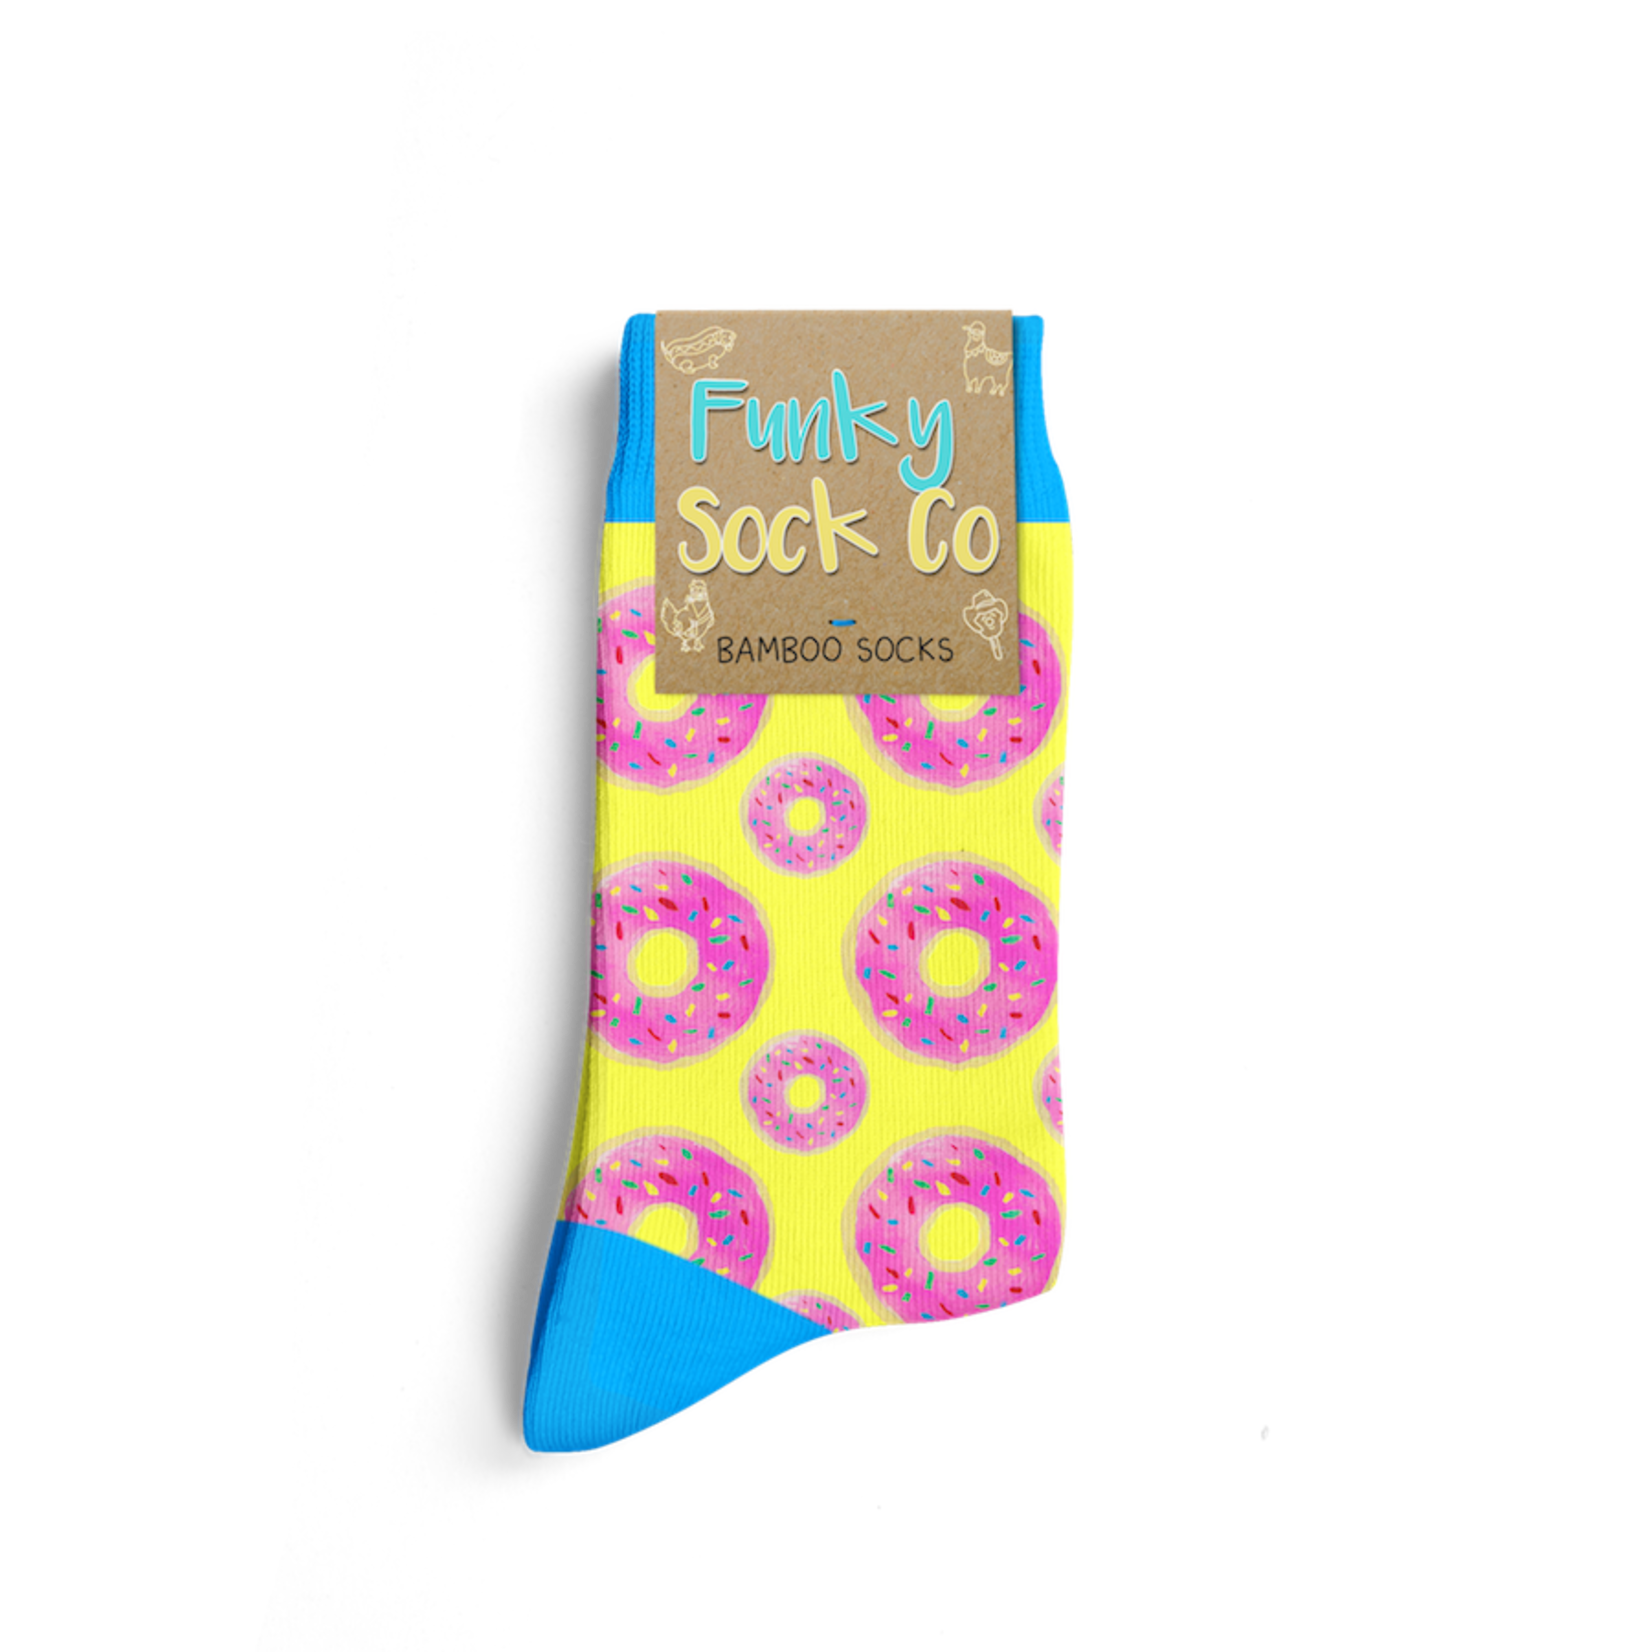 Funky Sock Co. Funky Sock Co. Bamboo Socks Glazed Donuts